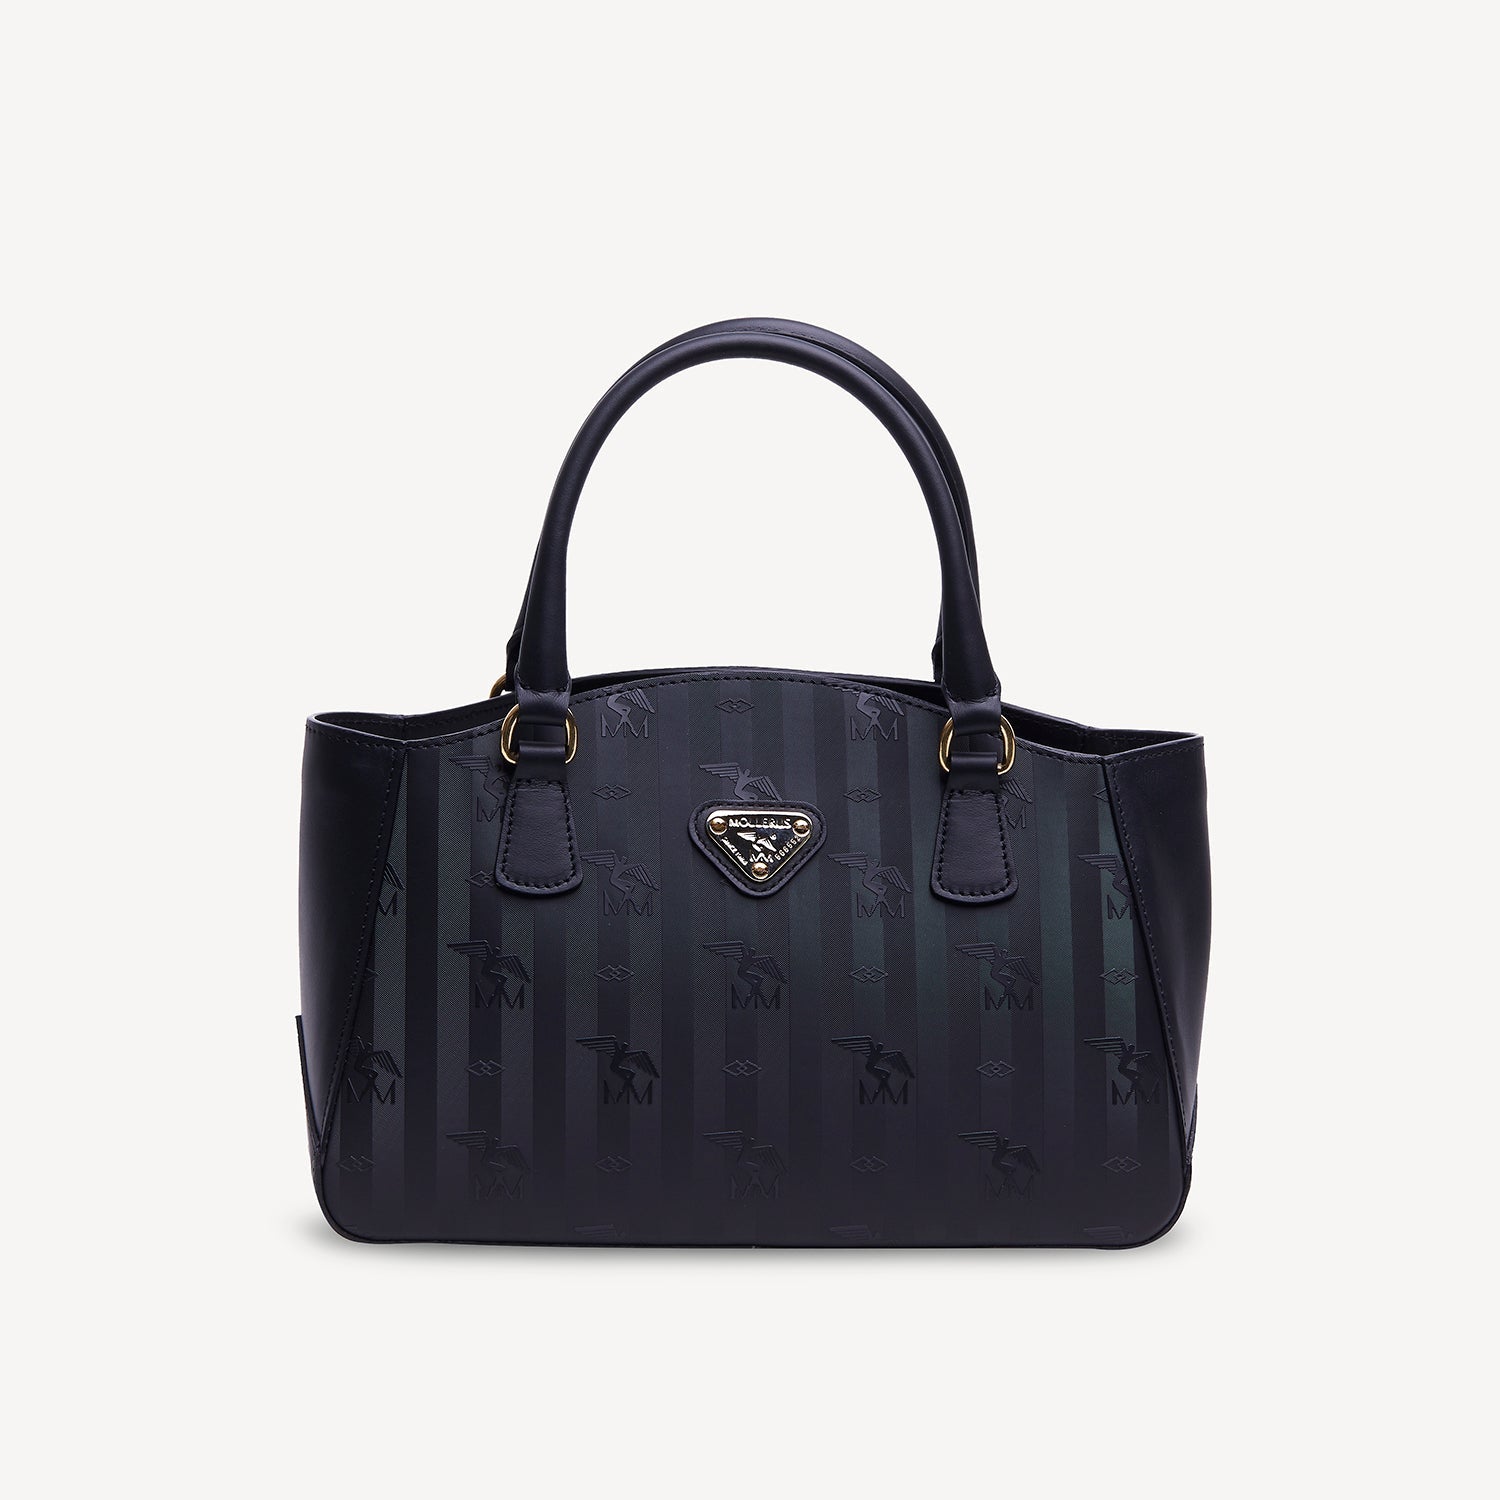 CELERINA | handbag black/gold